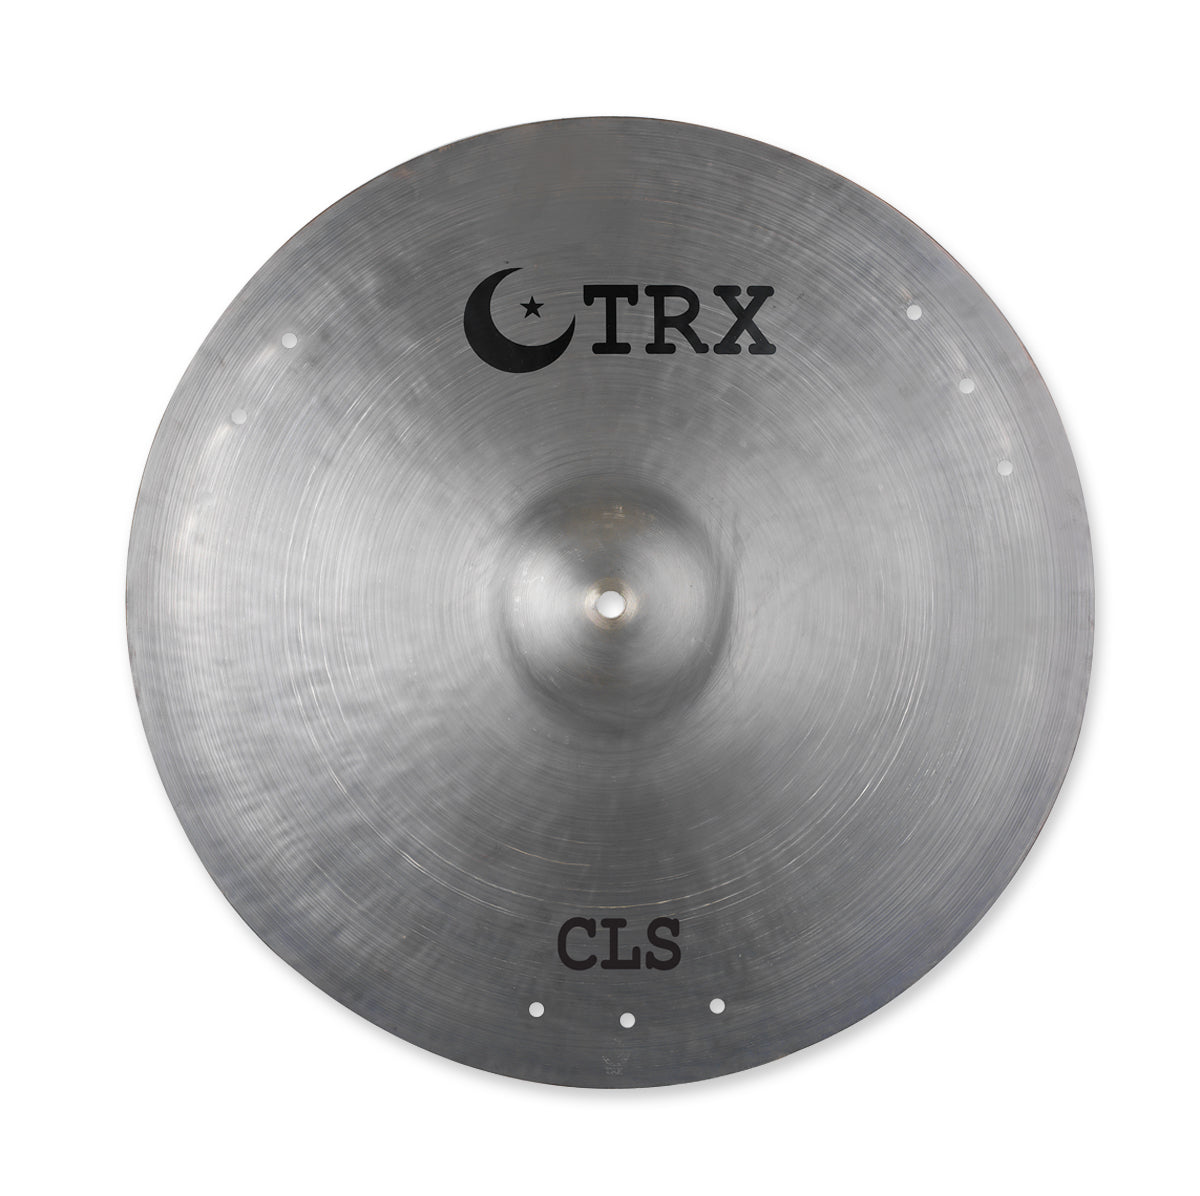 TRX Cymbals CLS Series Crash / Ride